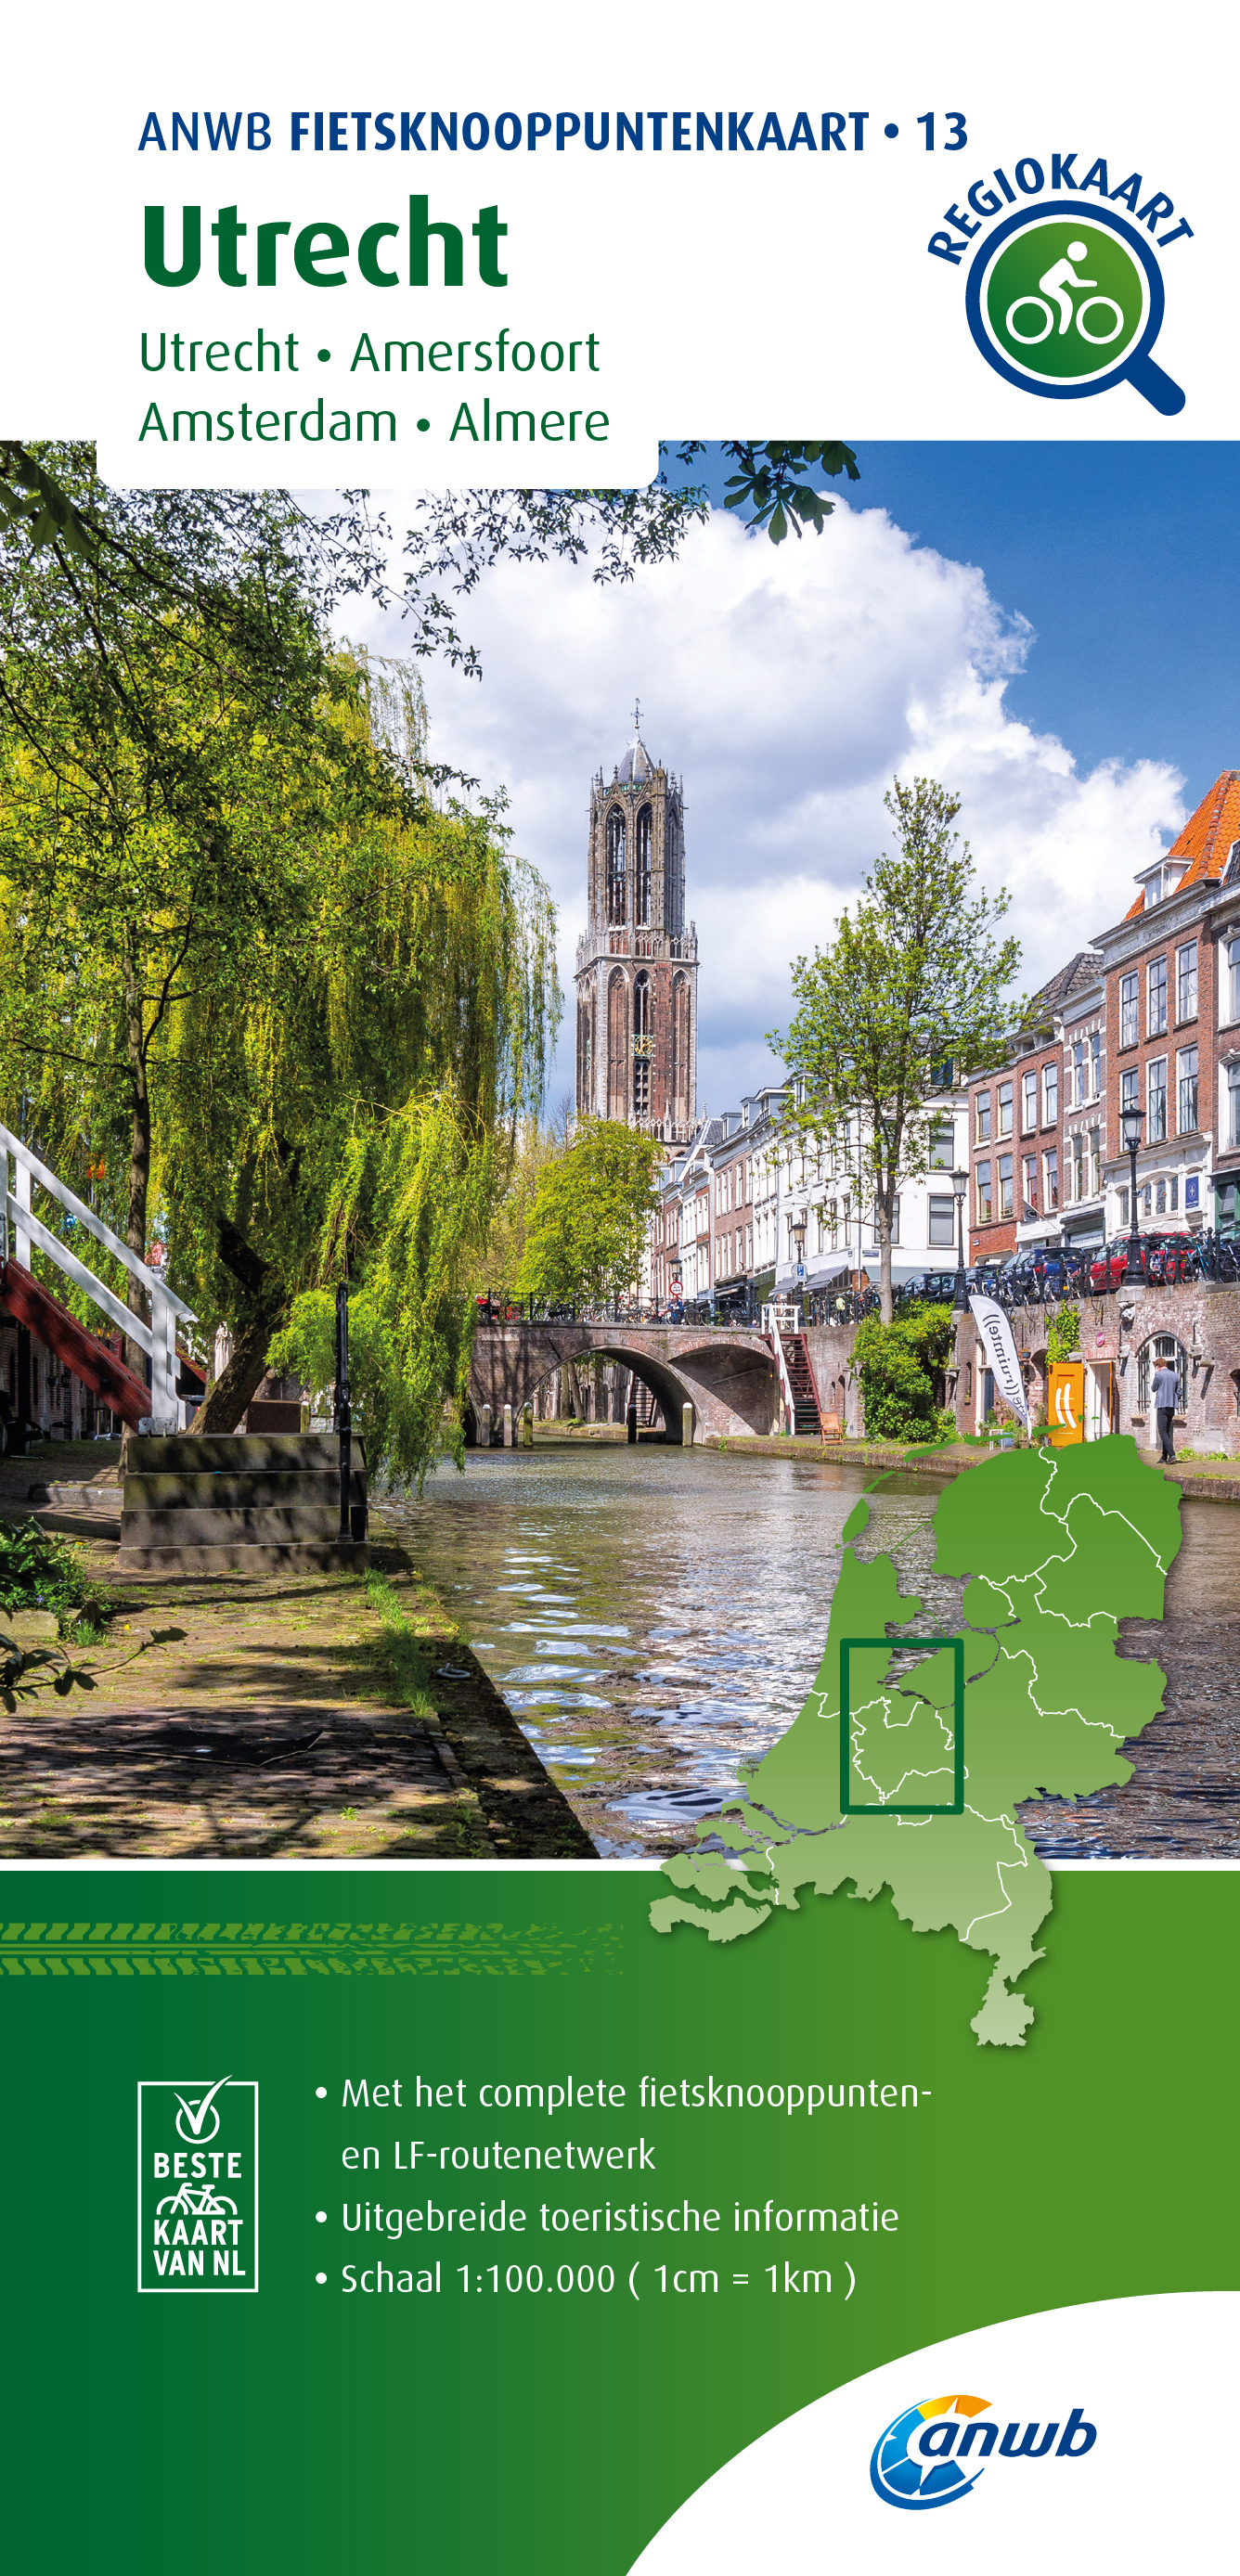 Online bestellen: Fietskaart 13 Regio Fietsknooppuntenkaart Utrecht | ANWB Media